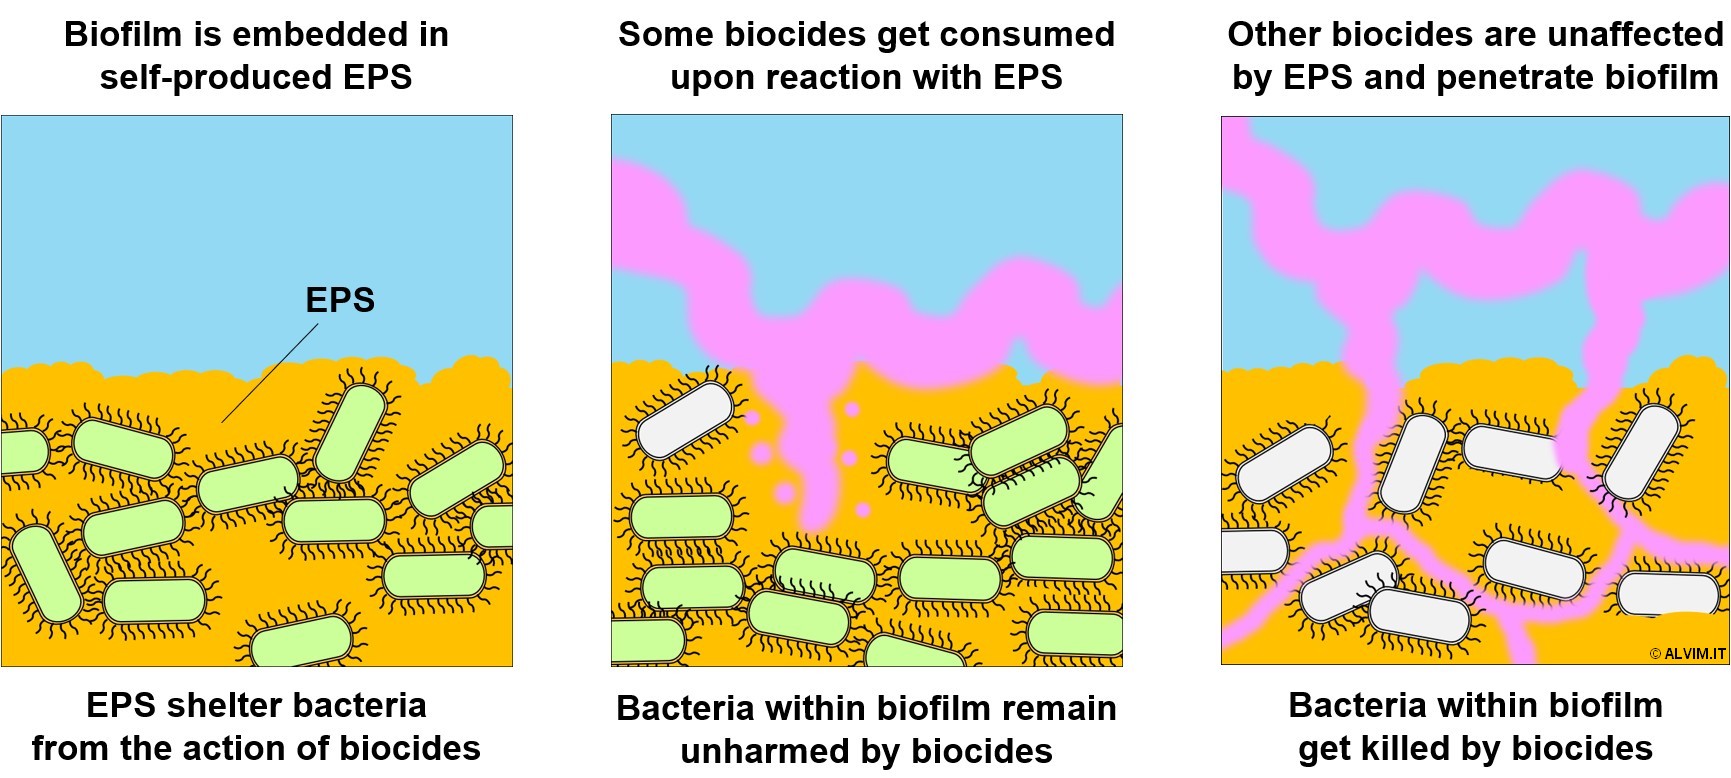 Biocide effectiveness toward biofilm